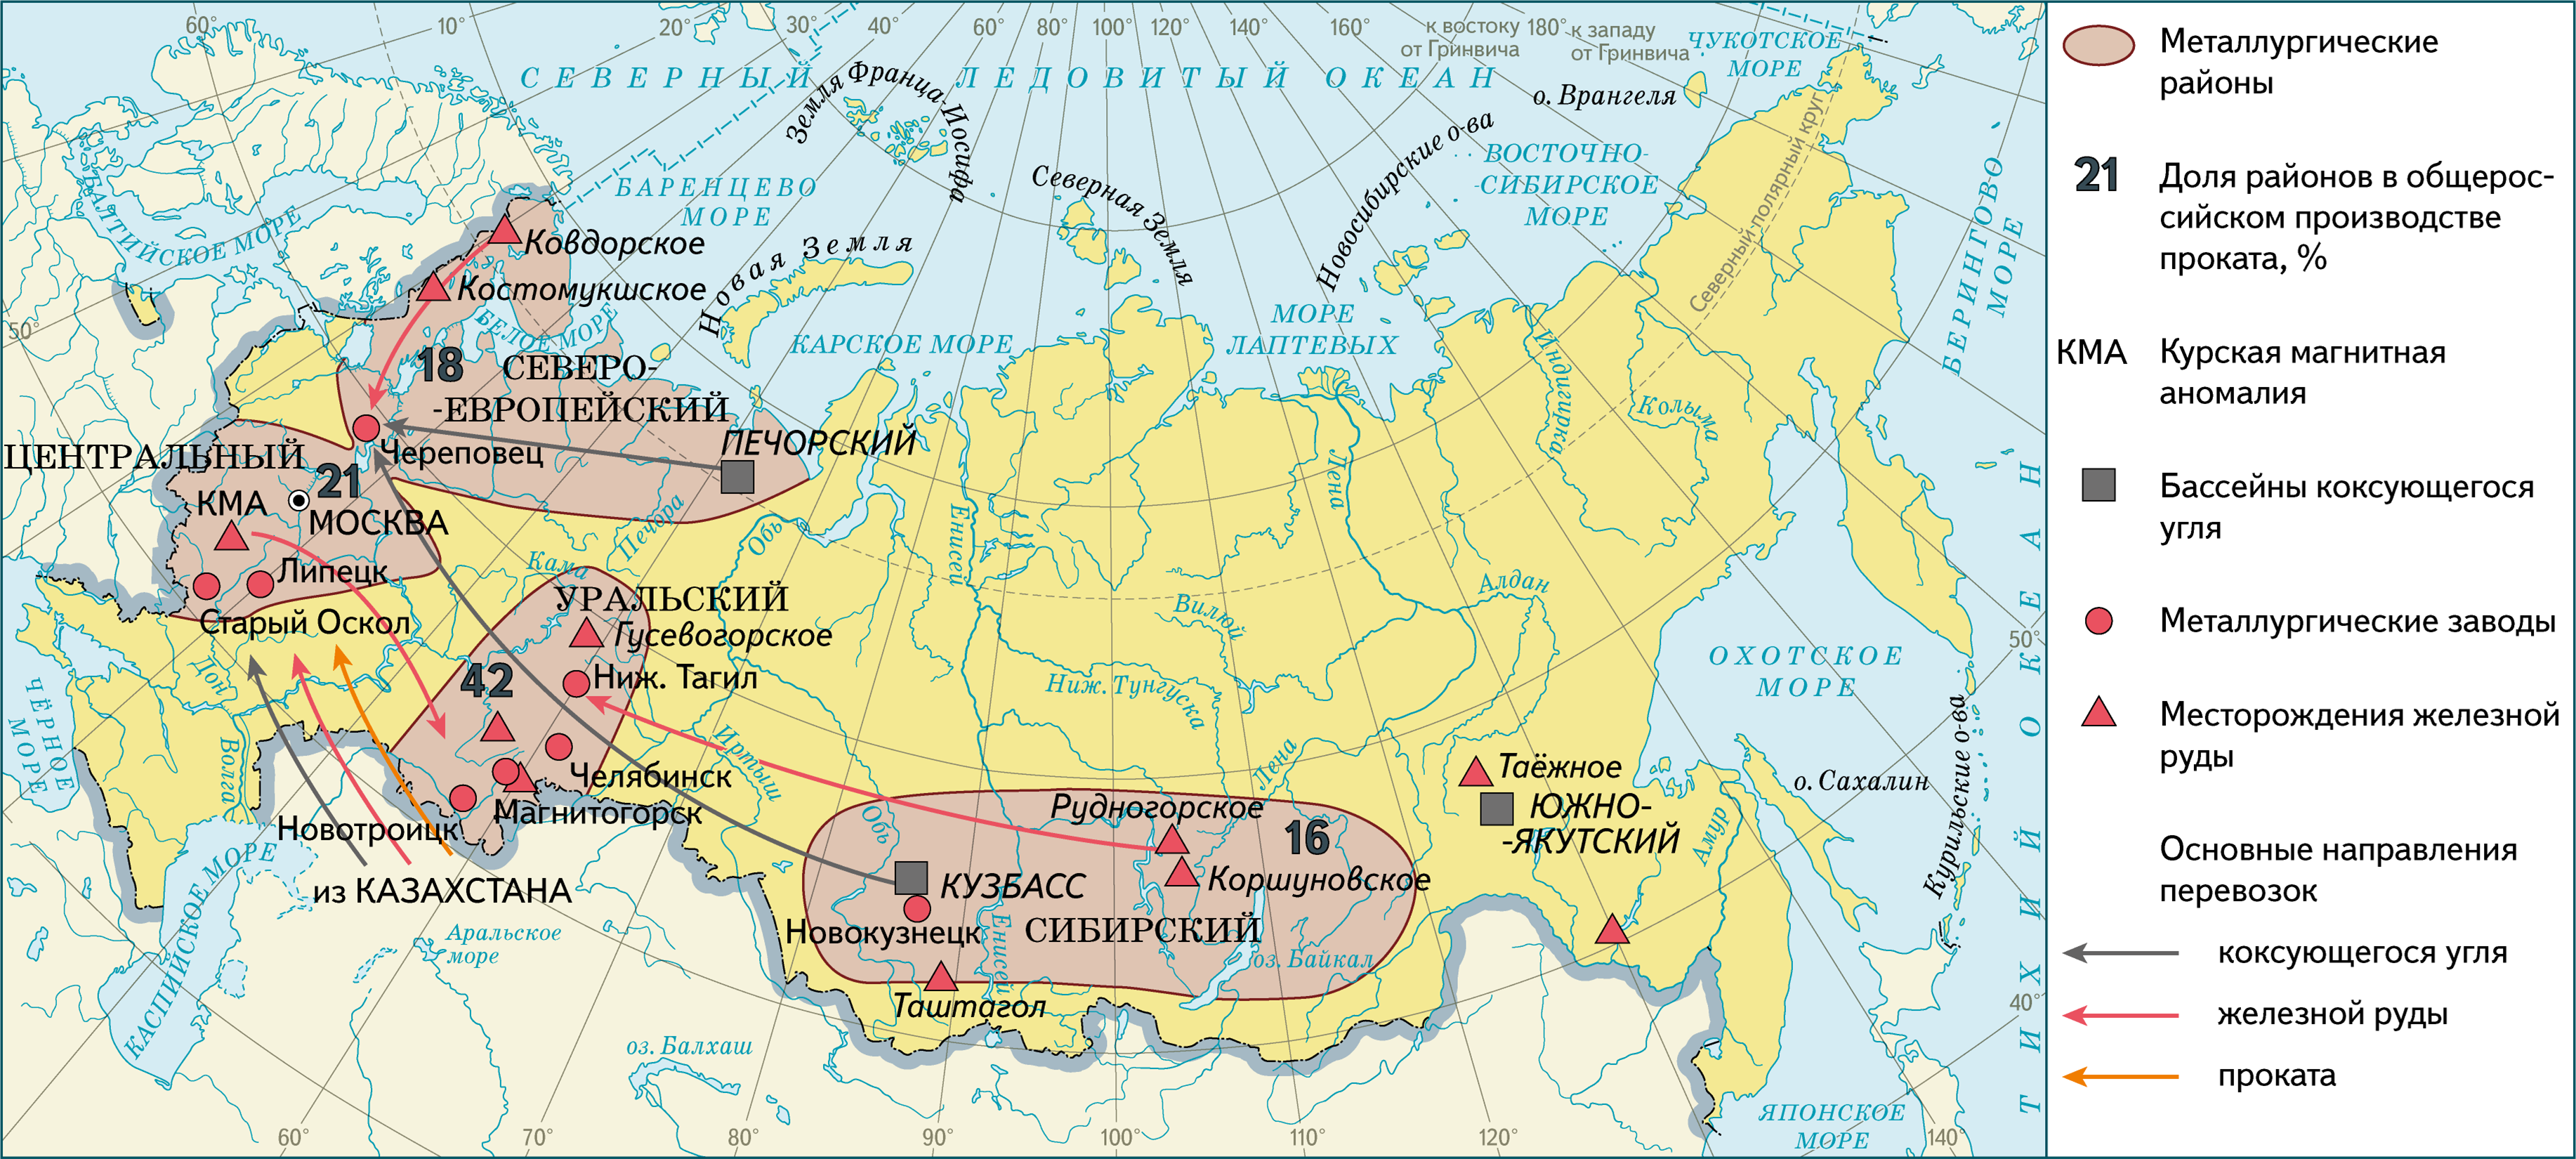 Месторождение железной руды КМА на карте. Железные руды КМА на карте России. КМА месторождение на карте. Месторождения железной руды в России на карте. Название месторождения железной руды